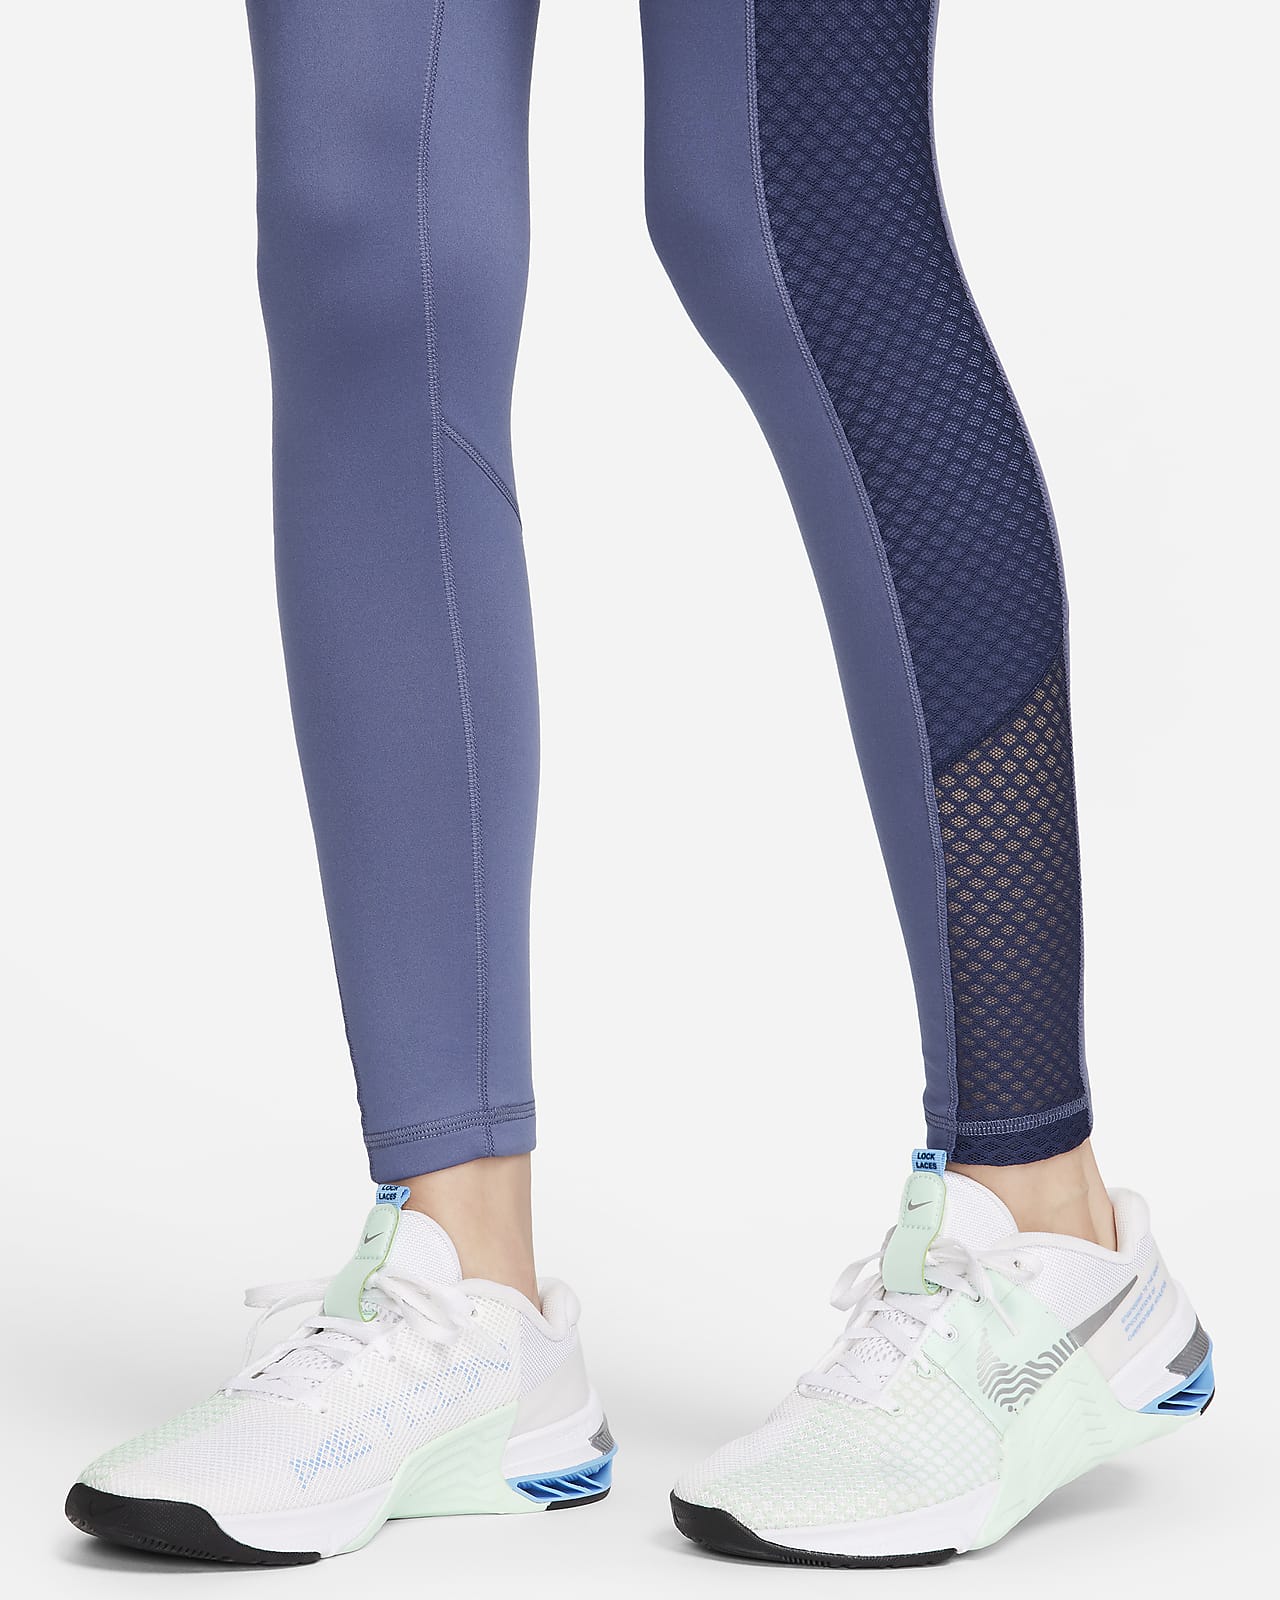 Leggings y mallas para el gimnasio y entrenamientos. Nike ES